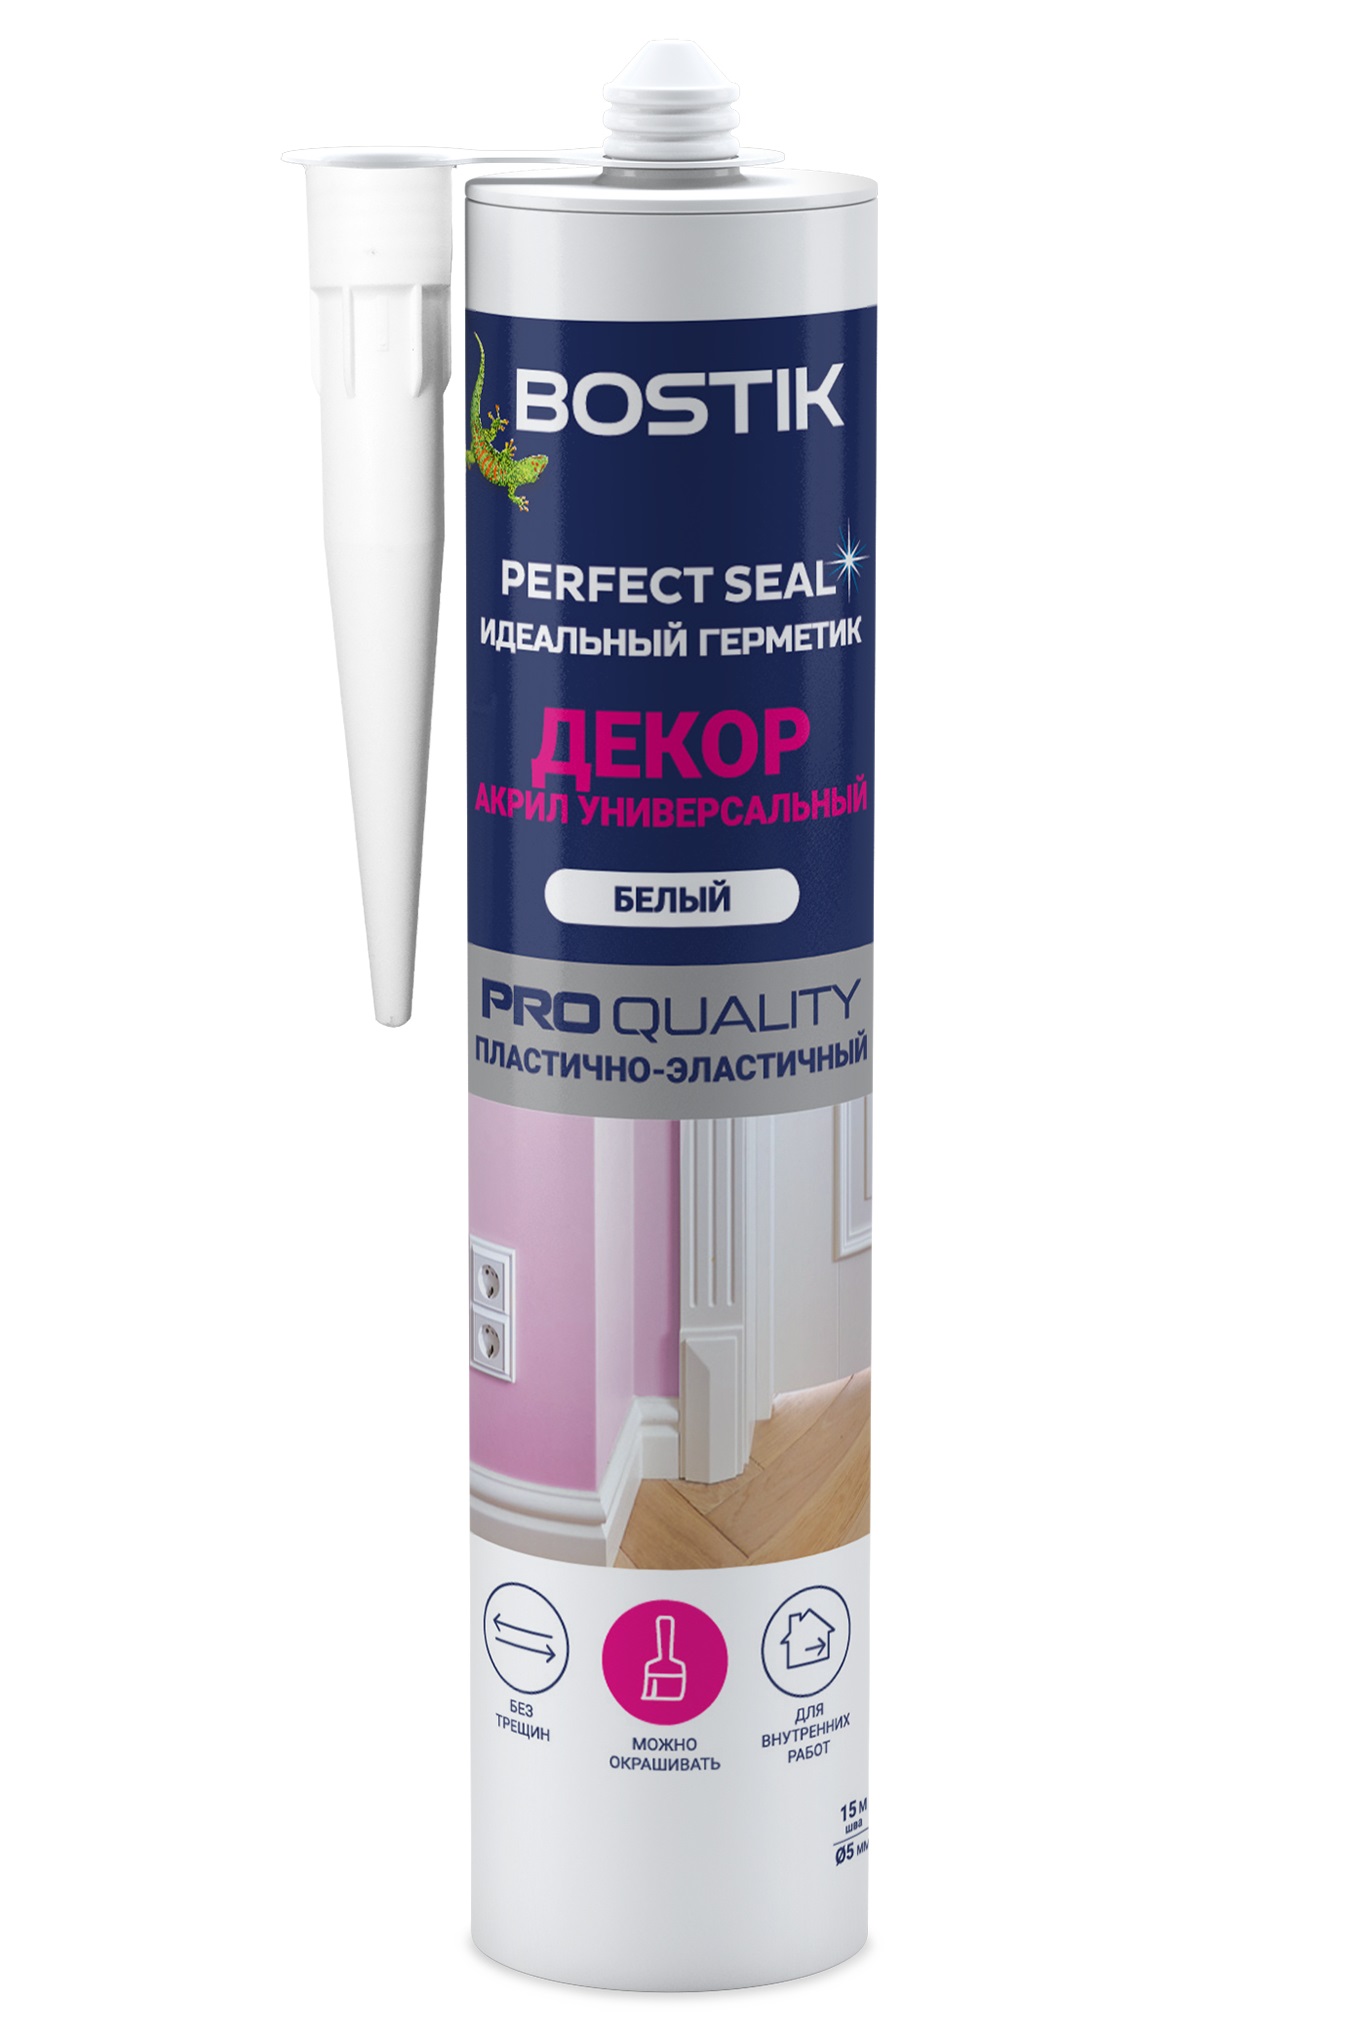 Герметик BOSTIK Perfect Seal Декор, акриловый универсальный, цвет белый, 280 мл.